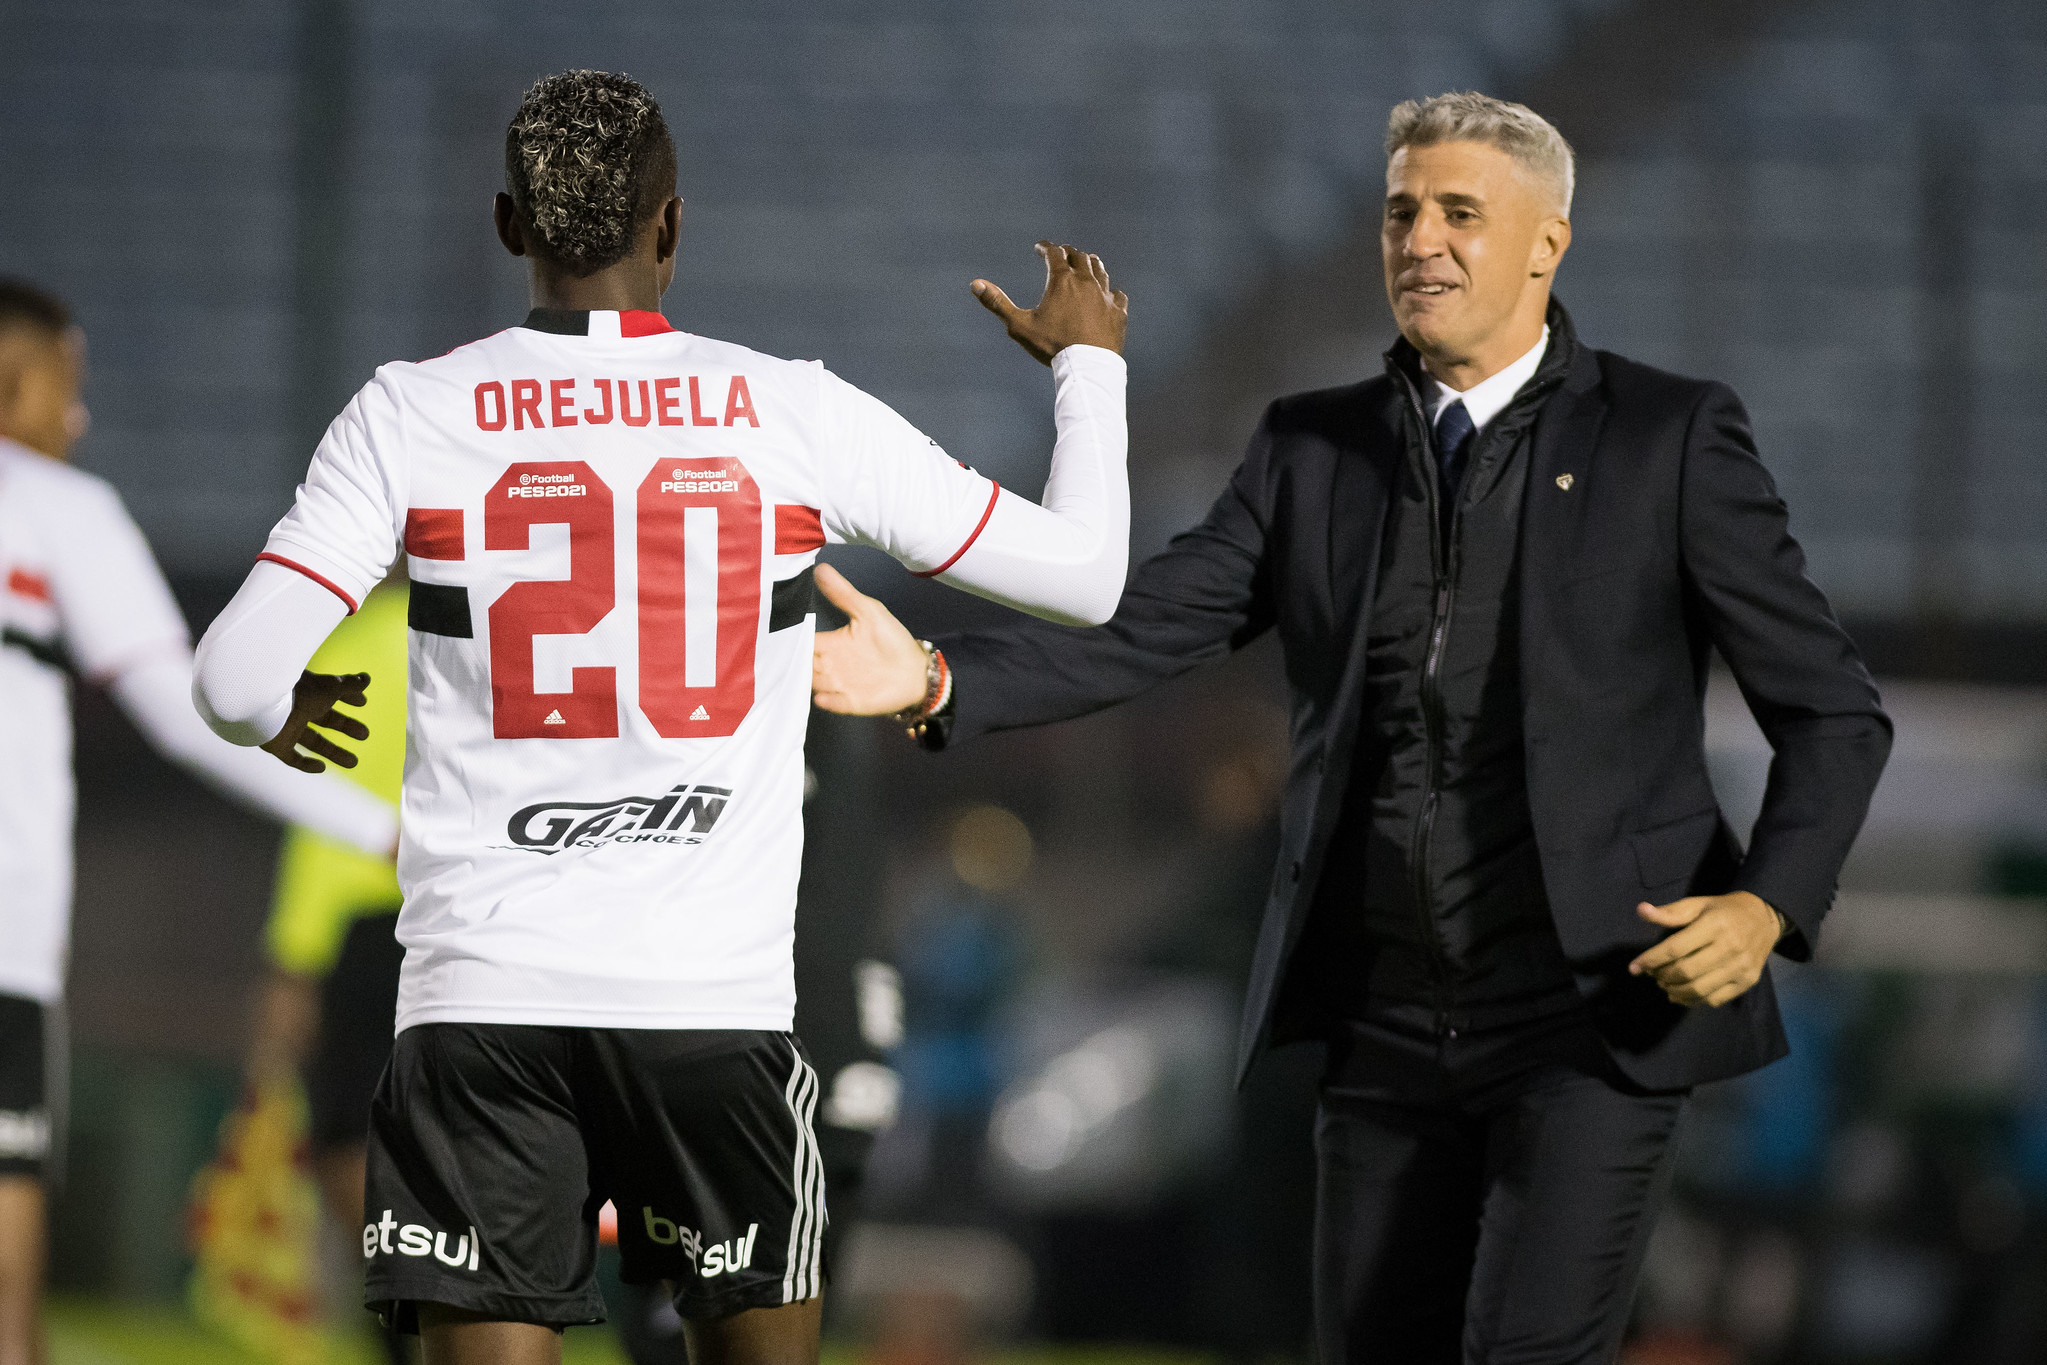 Estreia especial: Orejuela marca seu primeiro gol com a camisa Tricolor